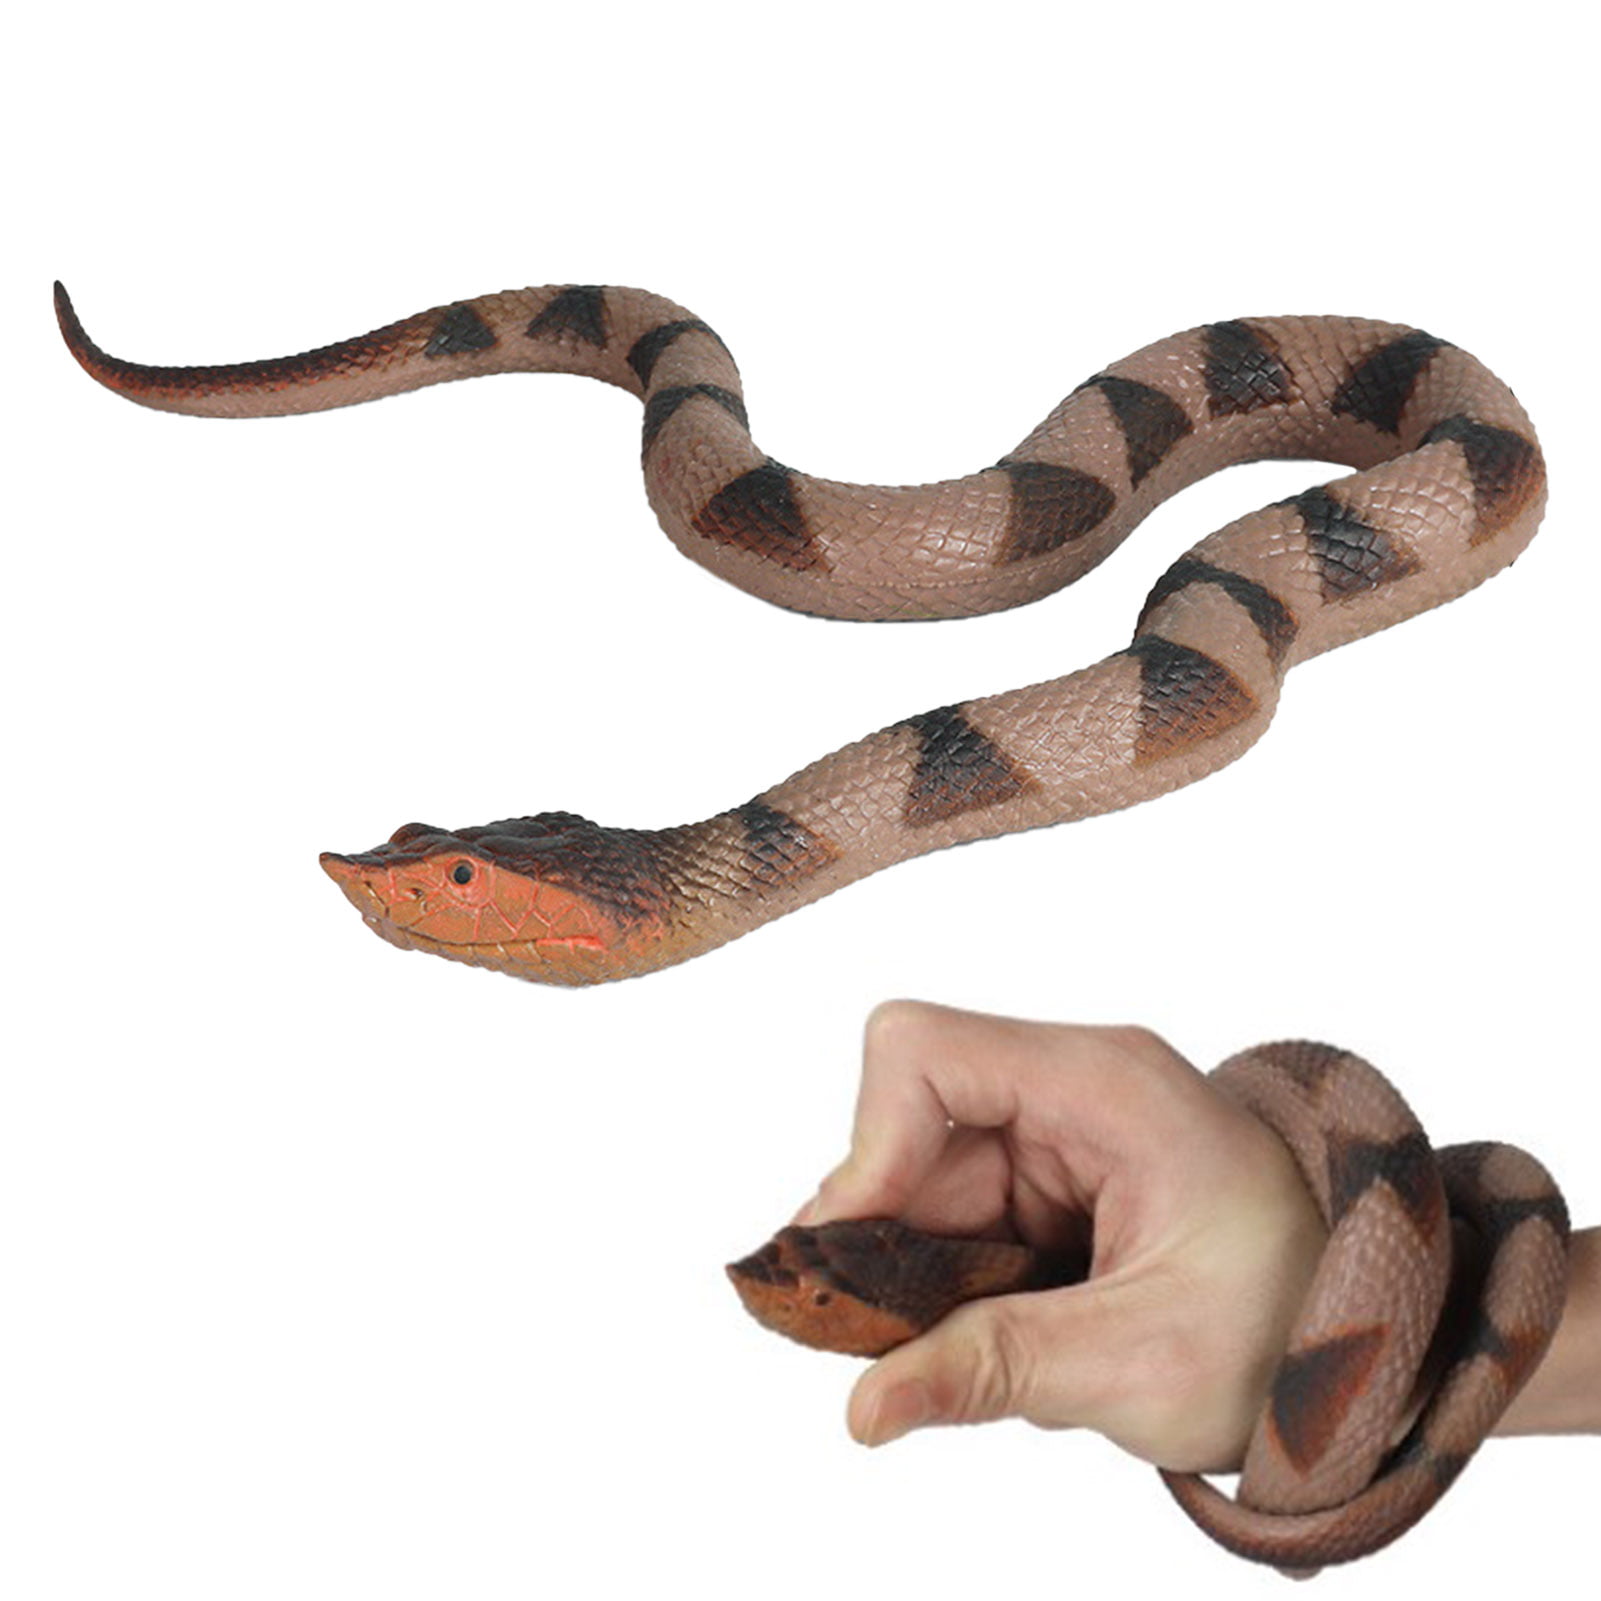 Realistic Manmade Soft Rubber Animal Fake Snake Garden Props Joke Prank Kid Toys 